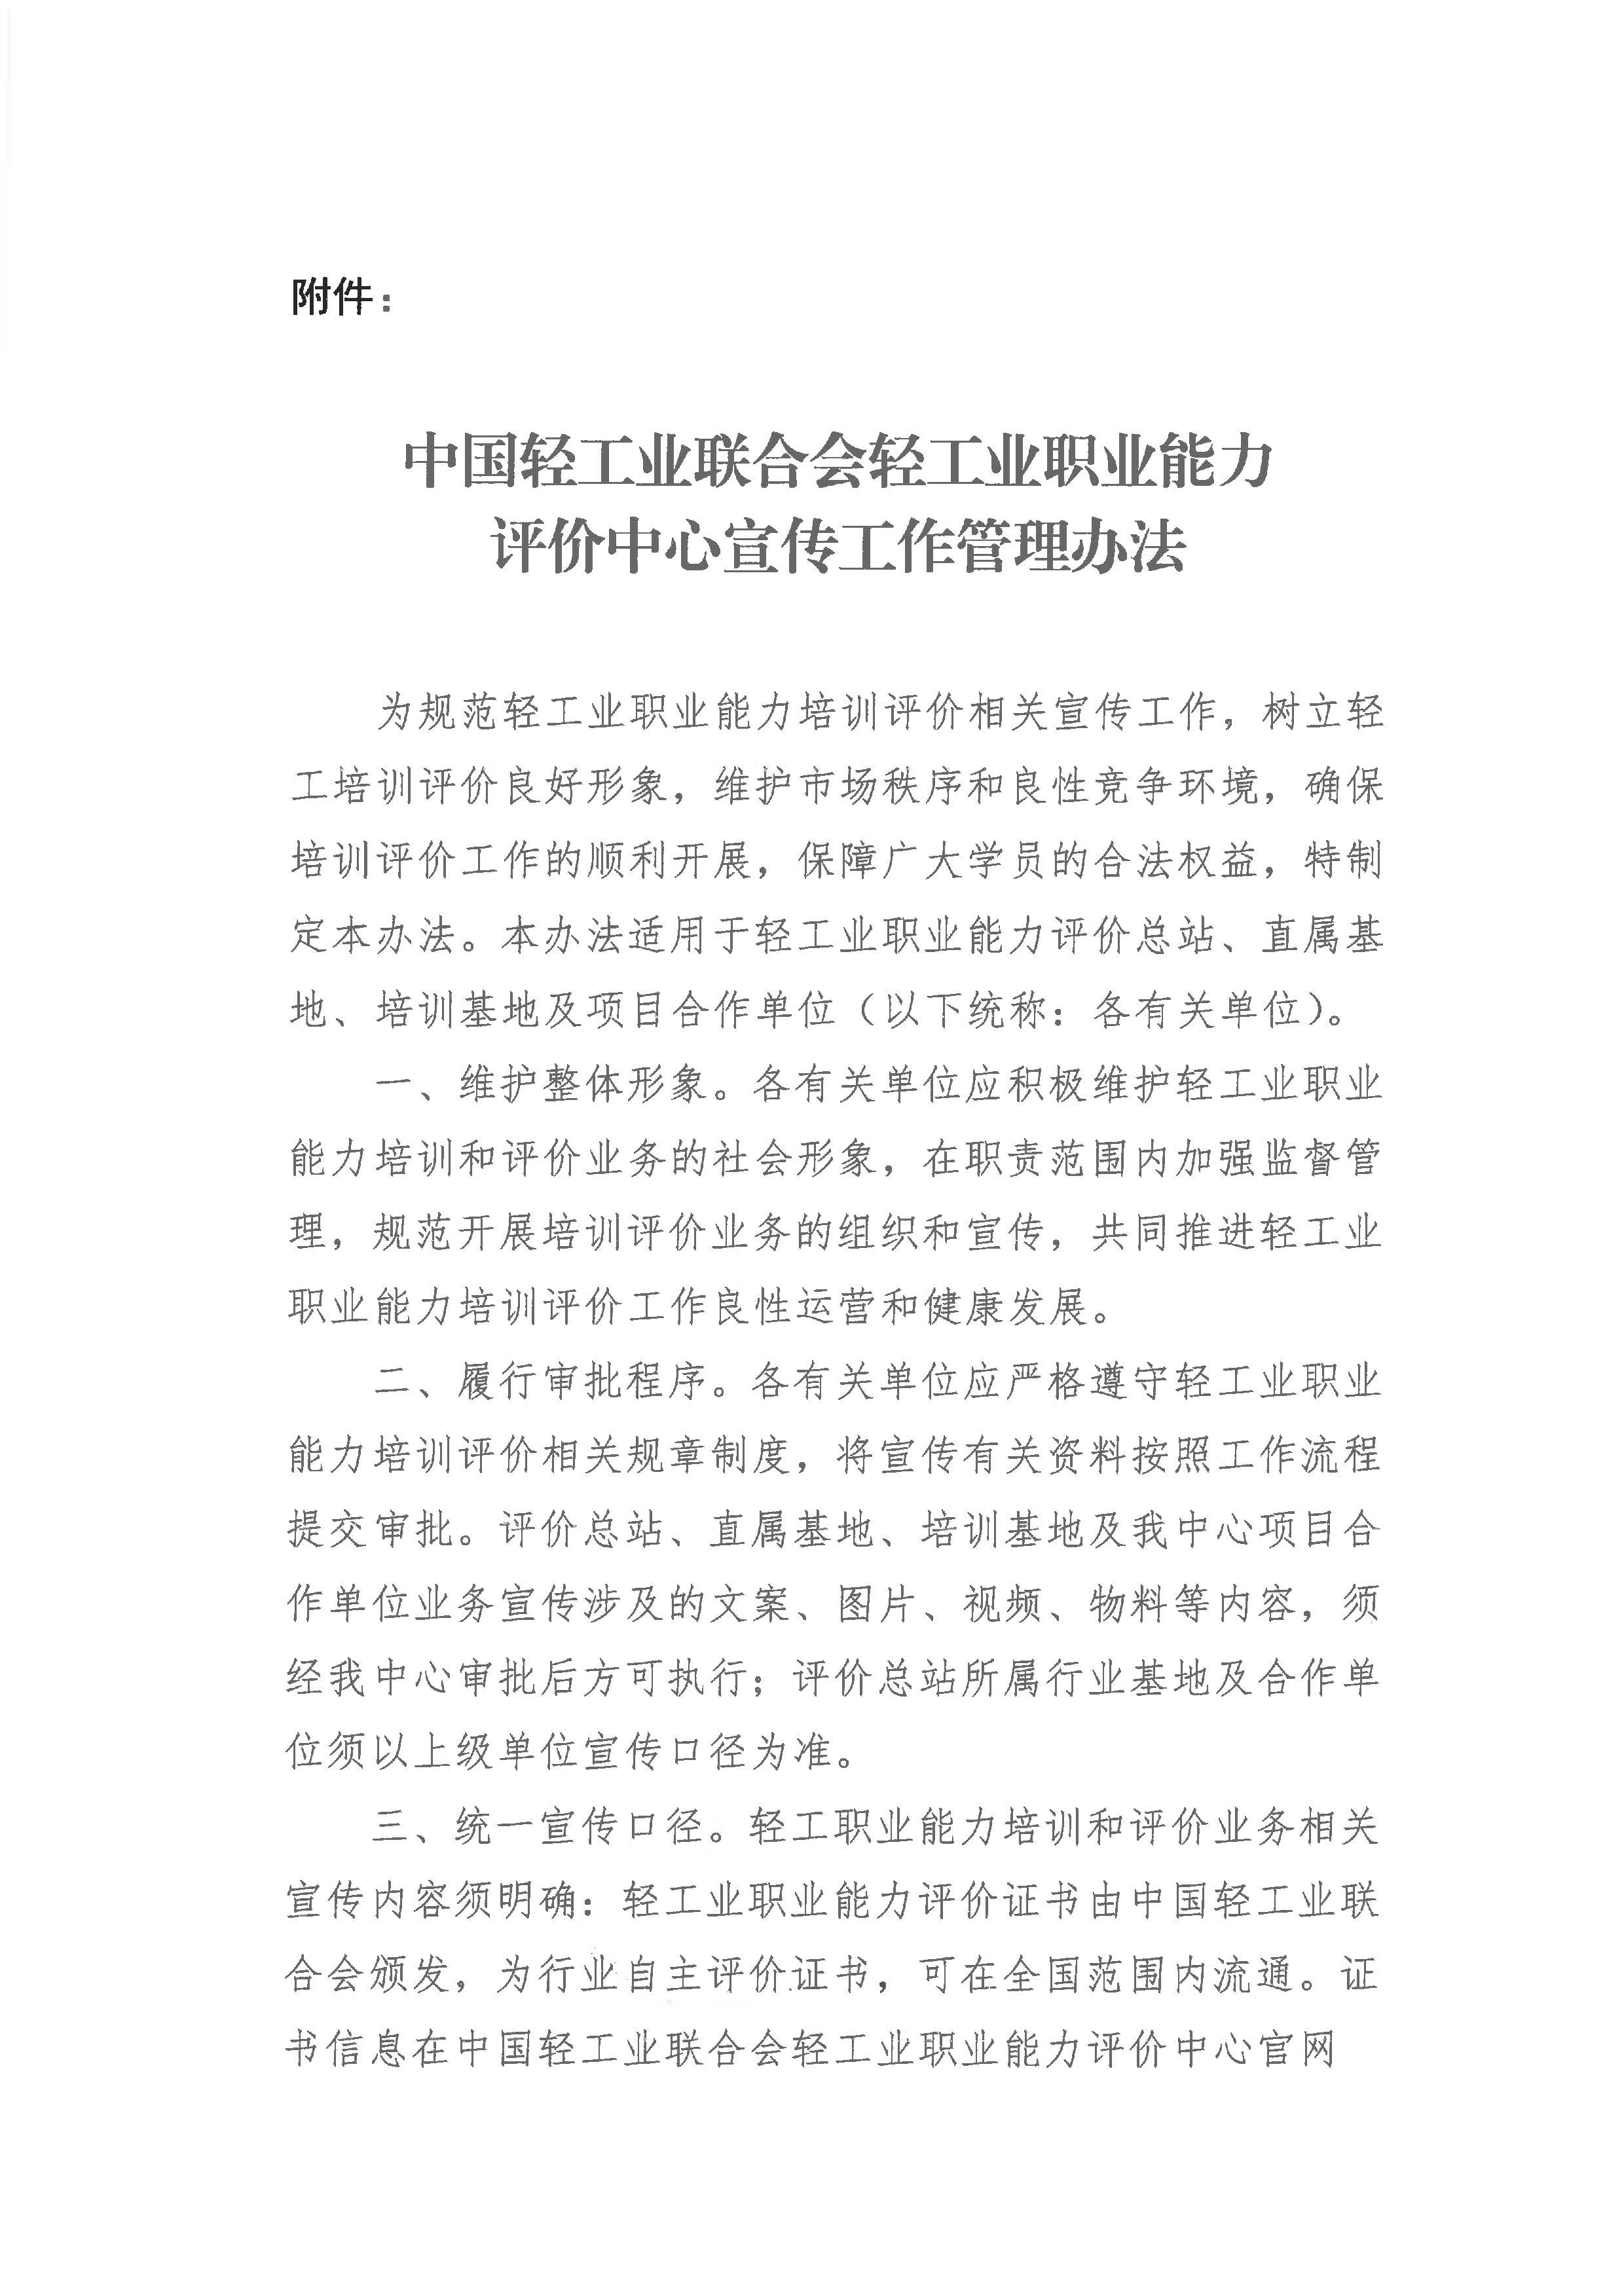 关于印发《中国轻工业联合会轻工业职业能力评价中心宣传工作管理办法》的通知(1)_页面_2.jpg